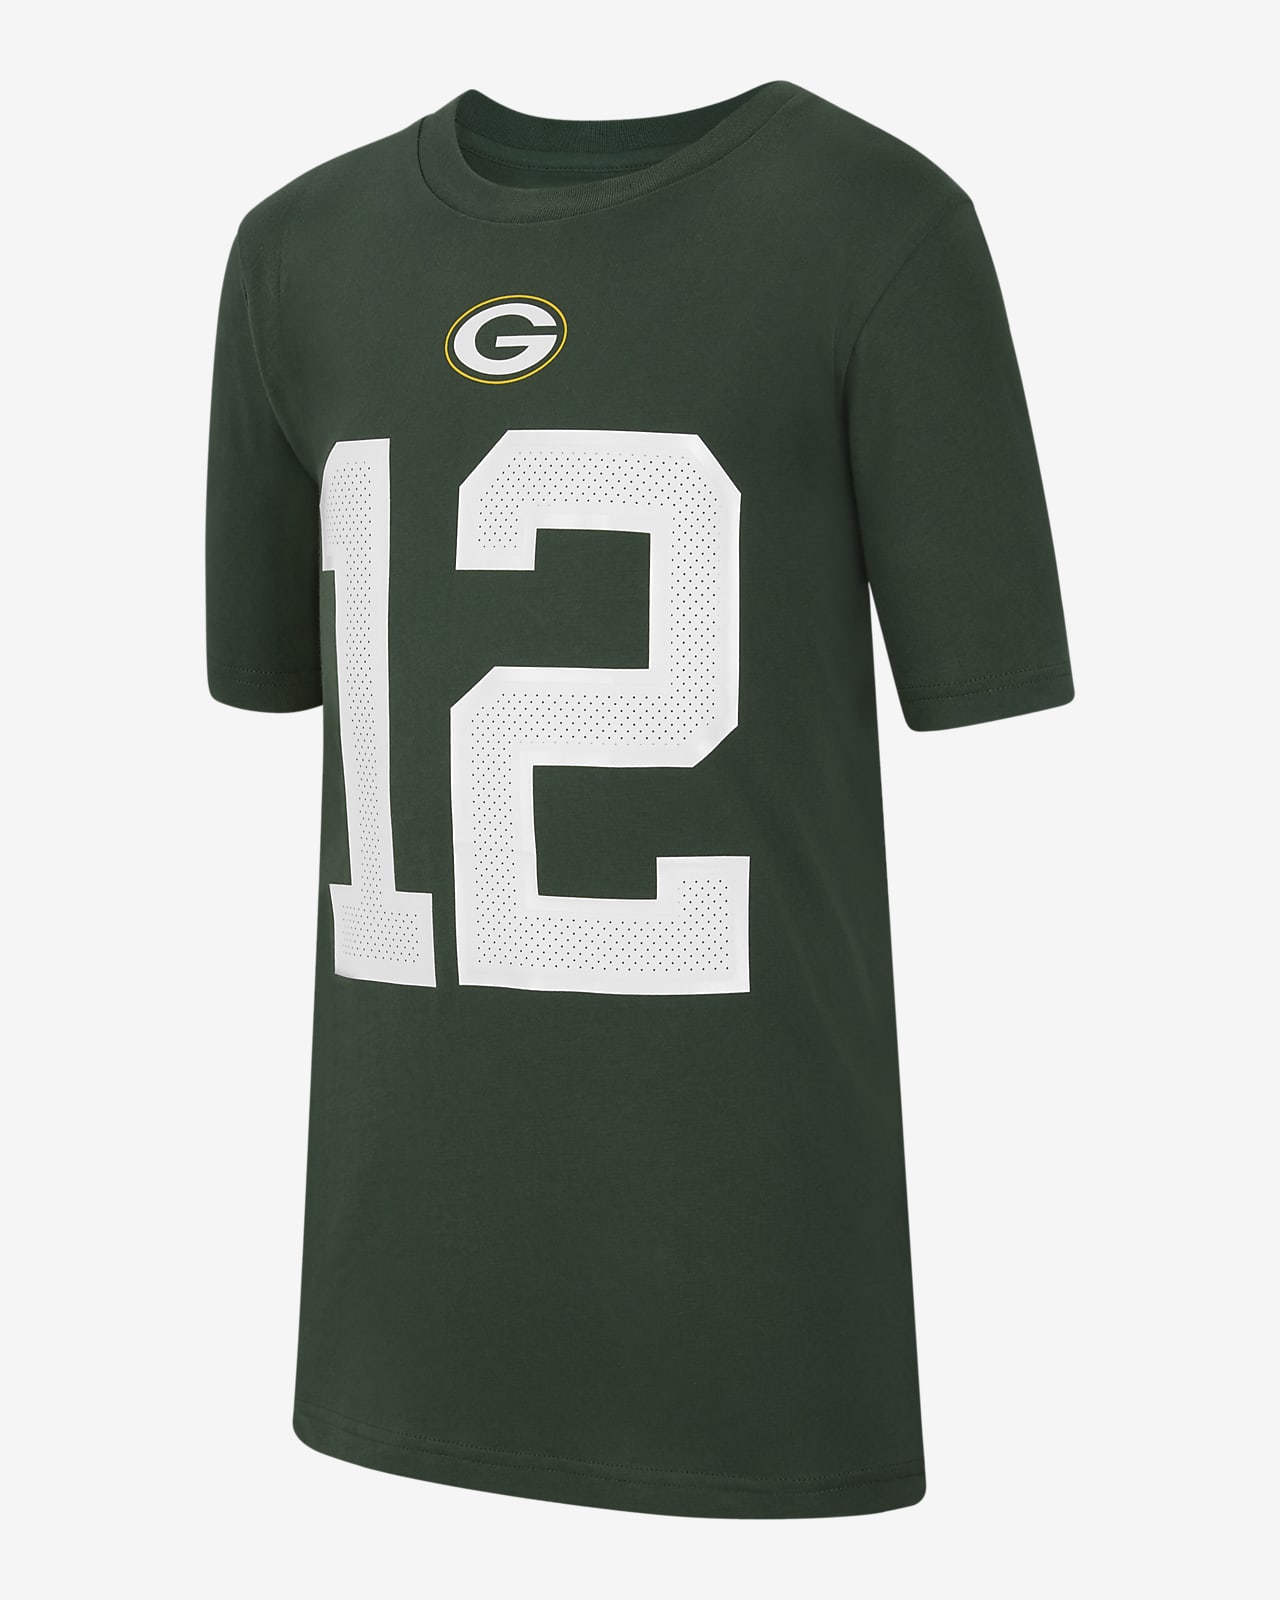 Nike (NFL Green Bay Packers) Older Kids' T-Shirt. Nike LU